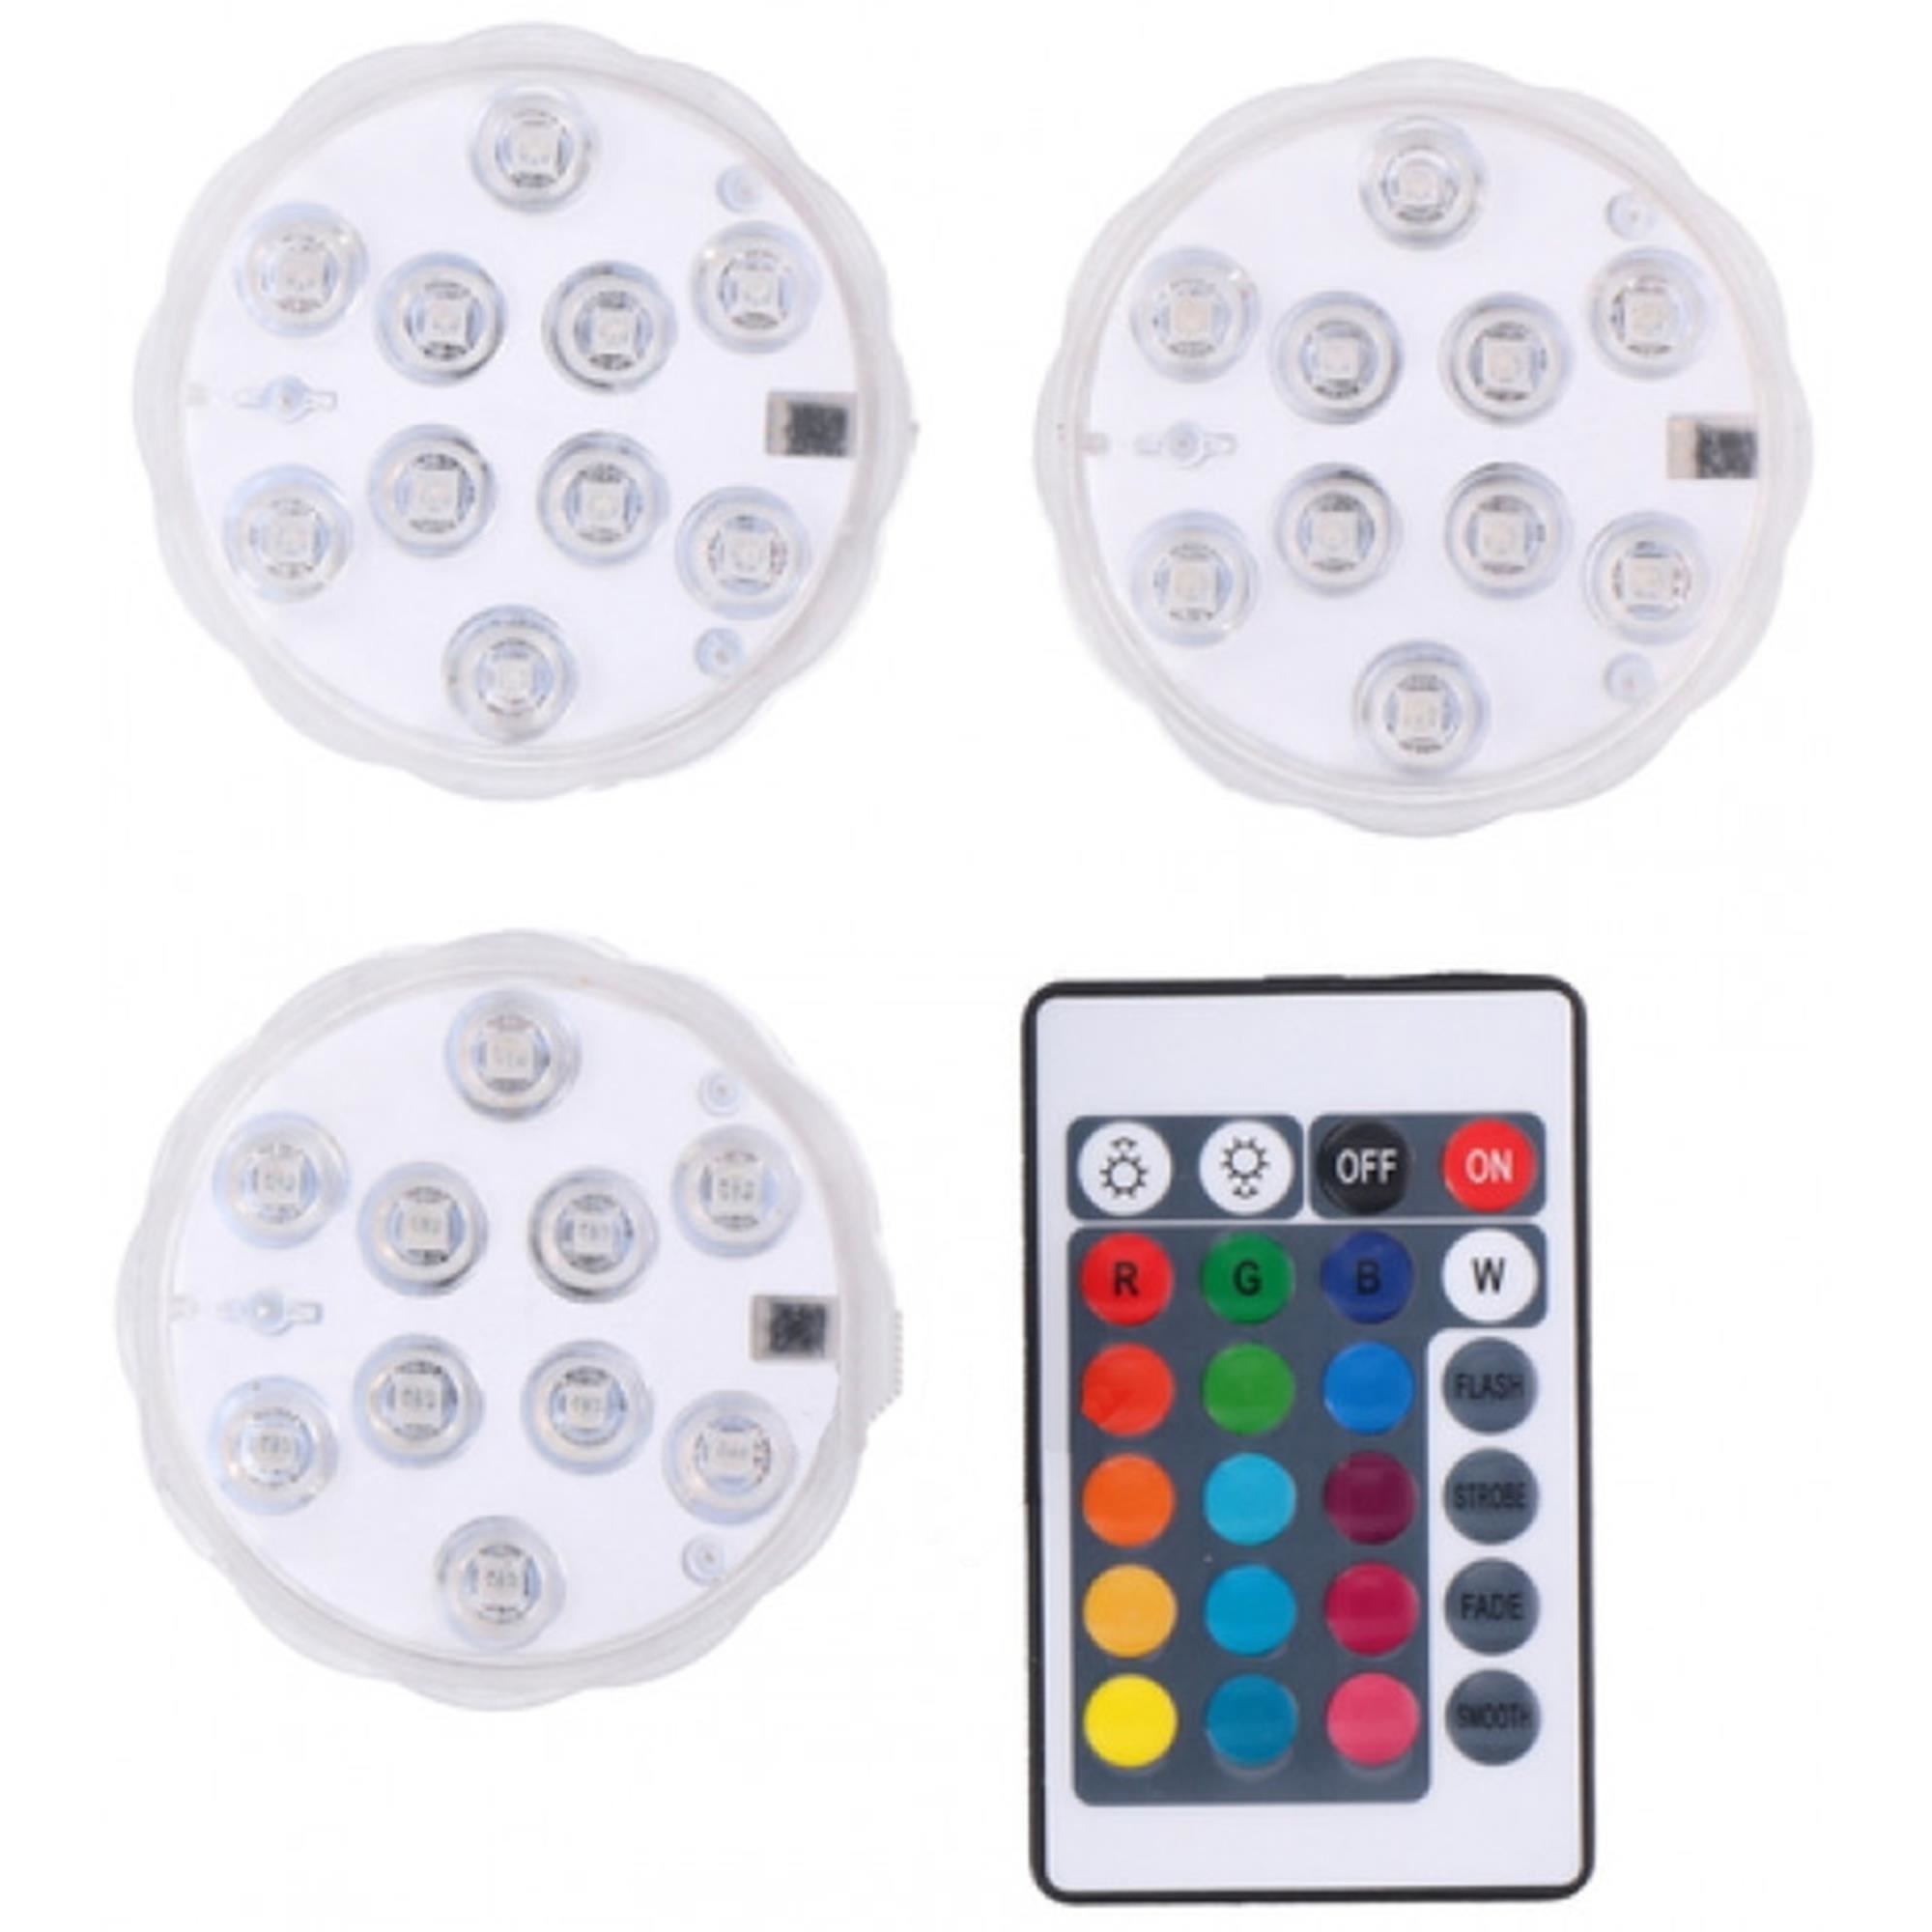 Raad Voorzieningen Vete Grundig LED Kleuren Lampen met Afstandsbediening - IP 65 Waterbestendig - 3  stuks kopen? - 2Cheap